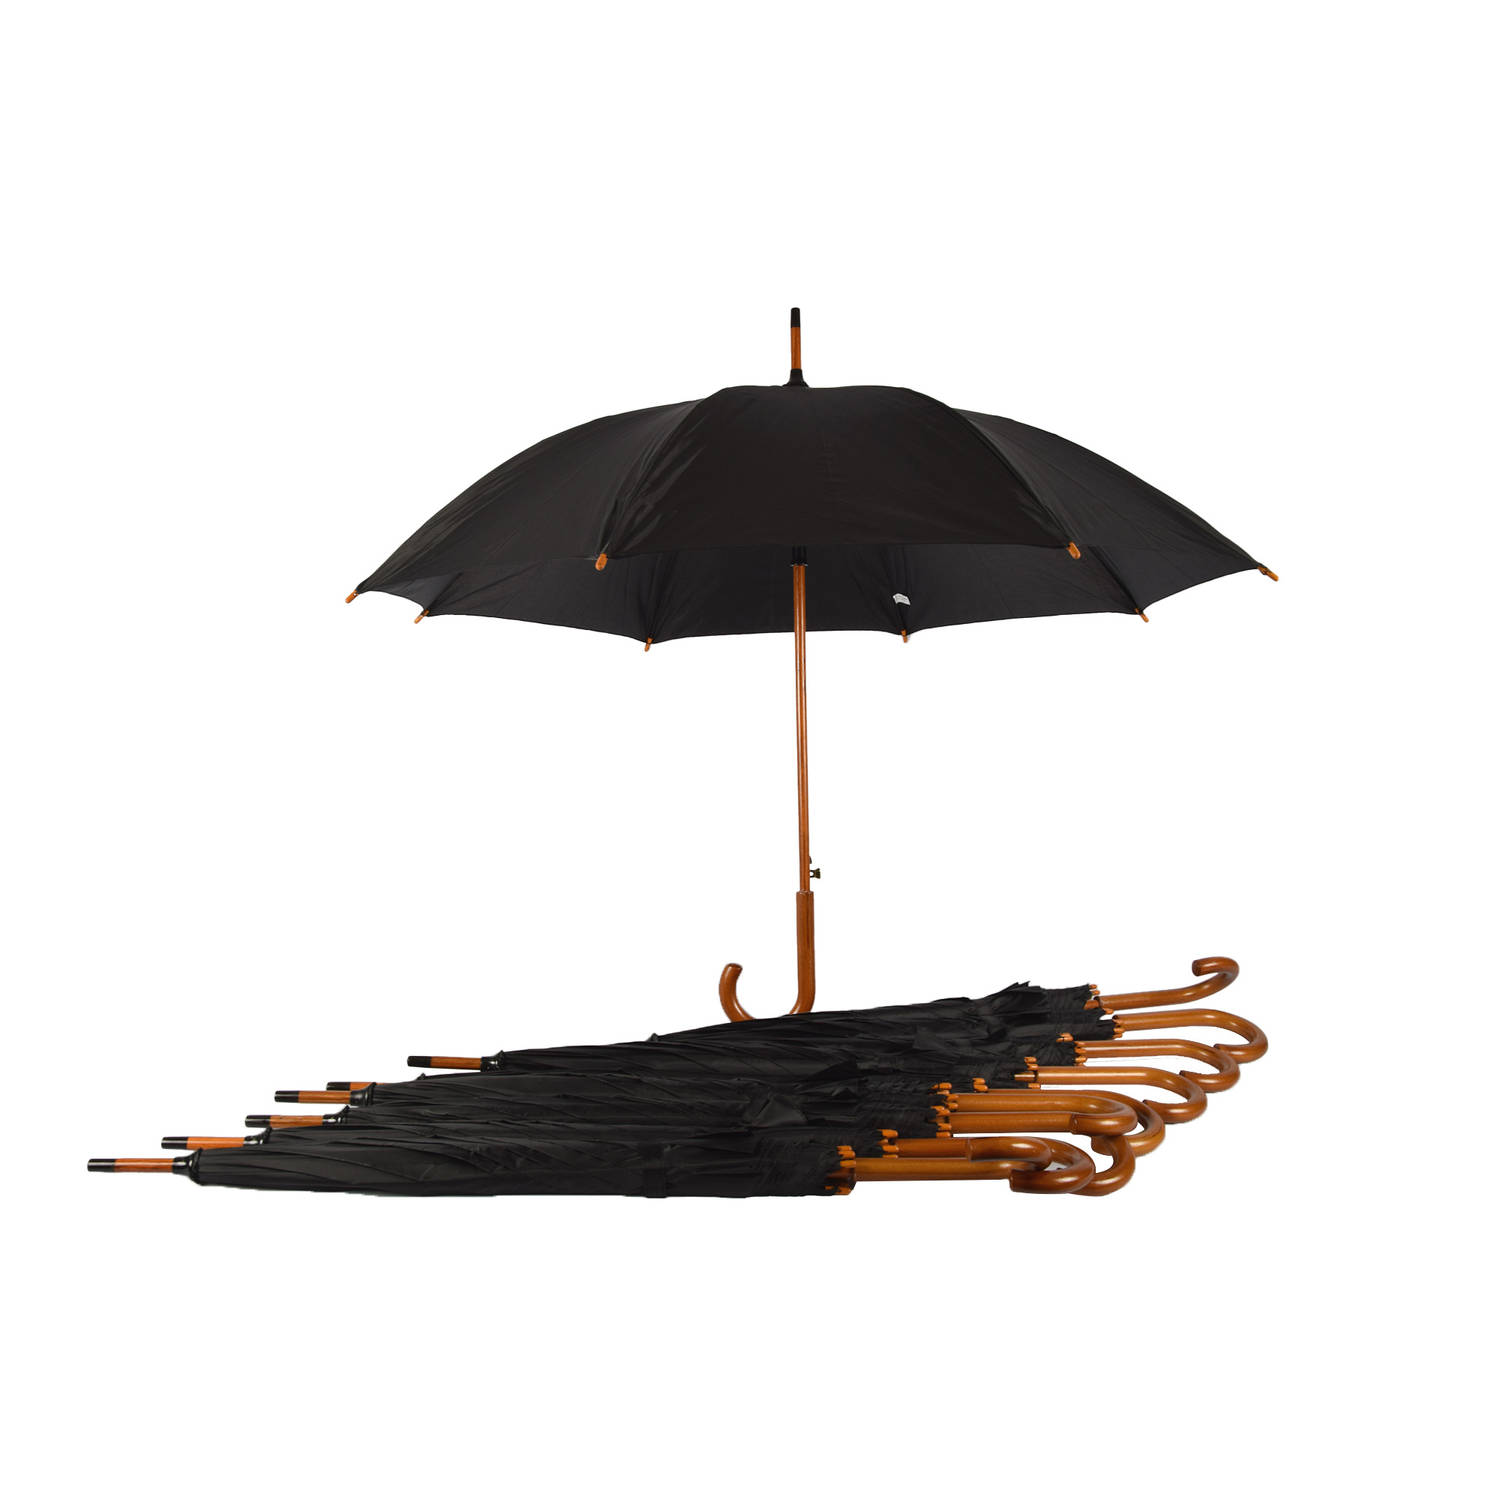 Voordelpak: Set van 10 Zwarte Automatische Paraplu's met Houten Handvat - 102cm Diameter – Groot Formaat voor Volwassenen - Windbestendig